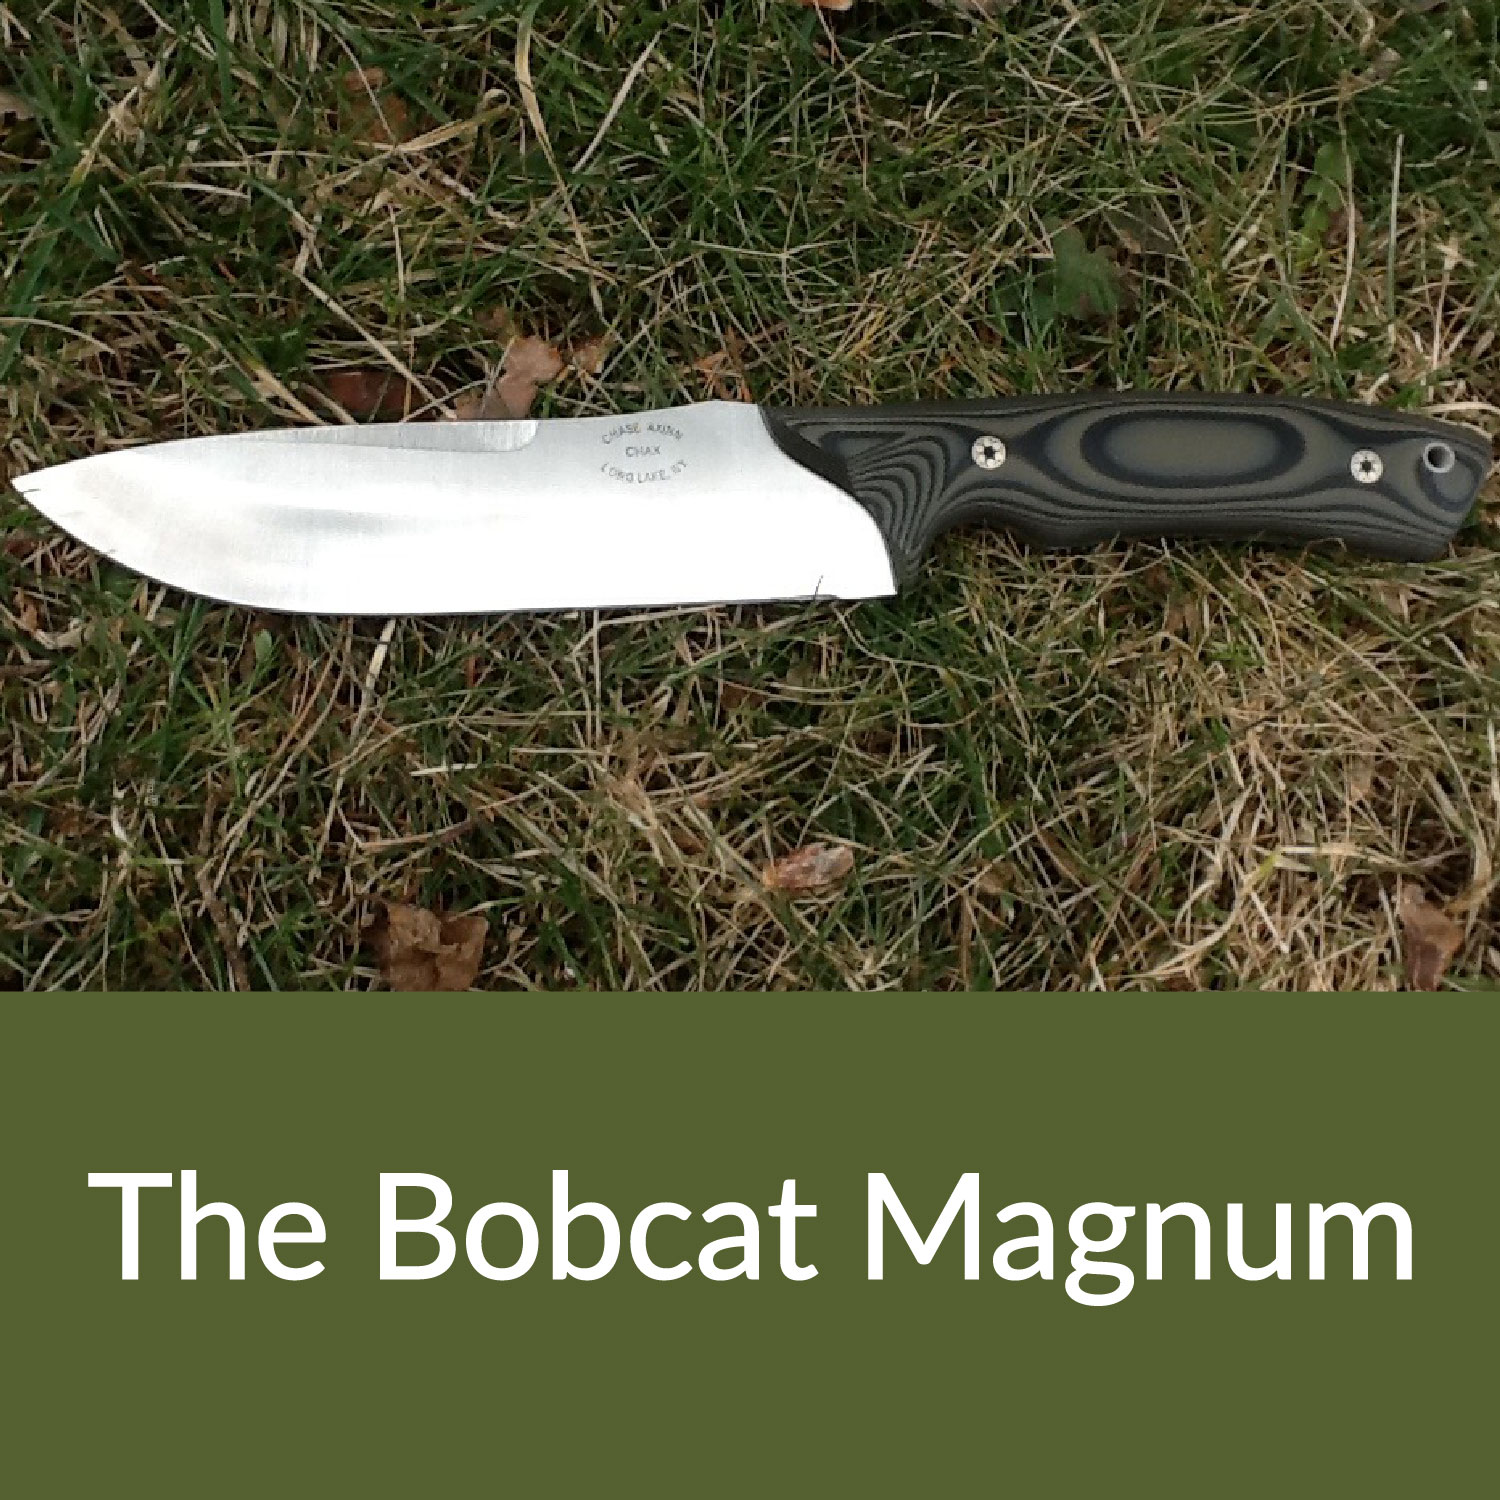 The Bobcat Magnum